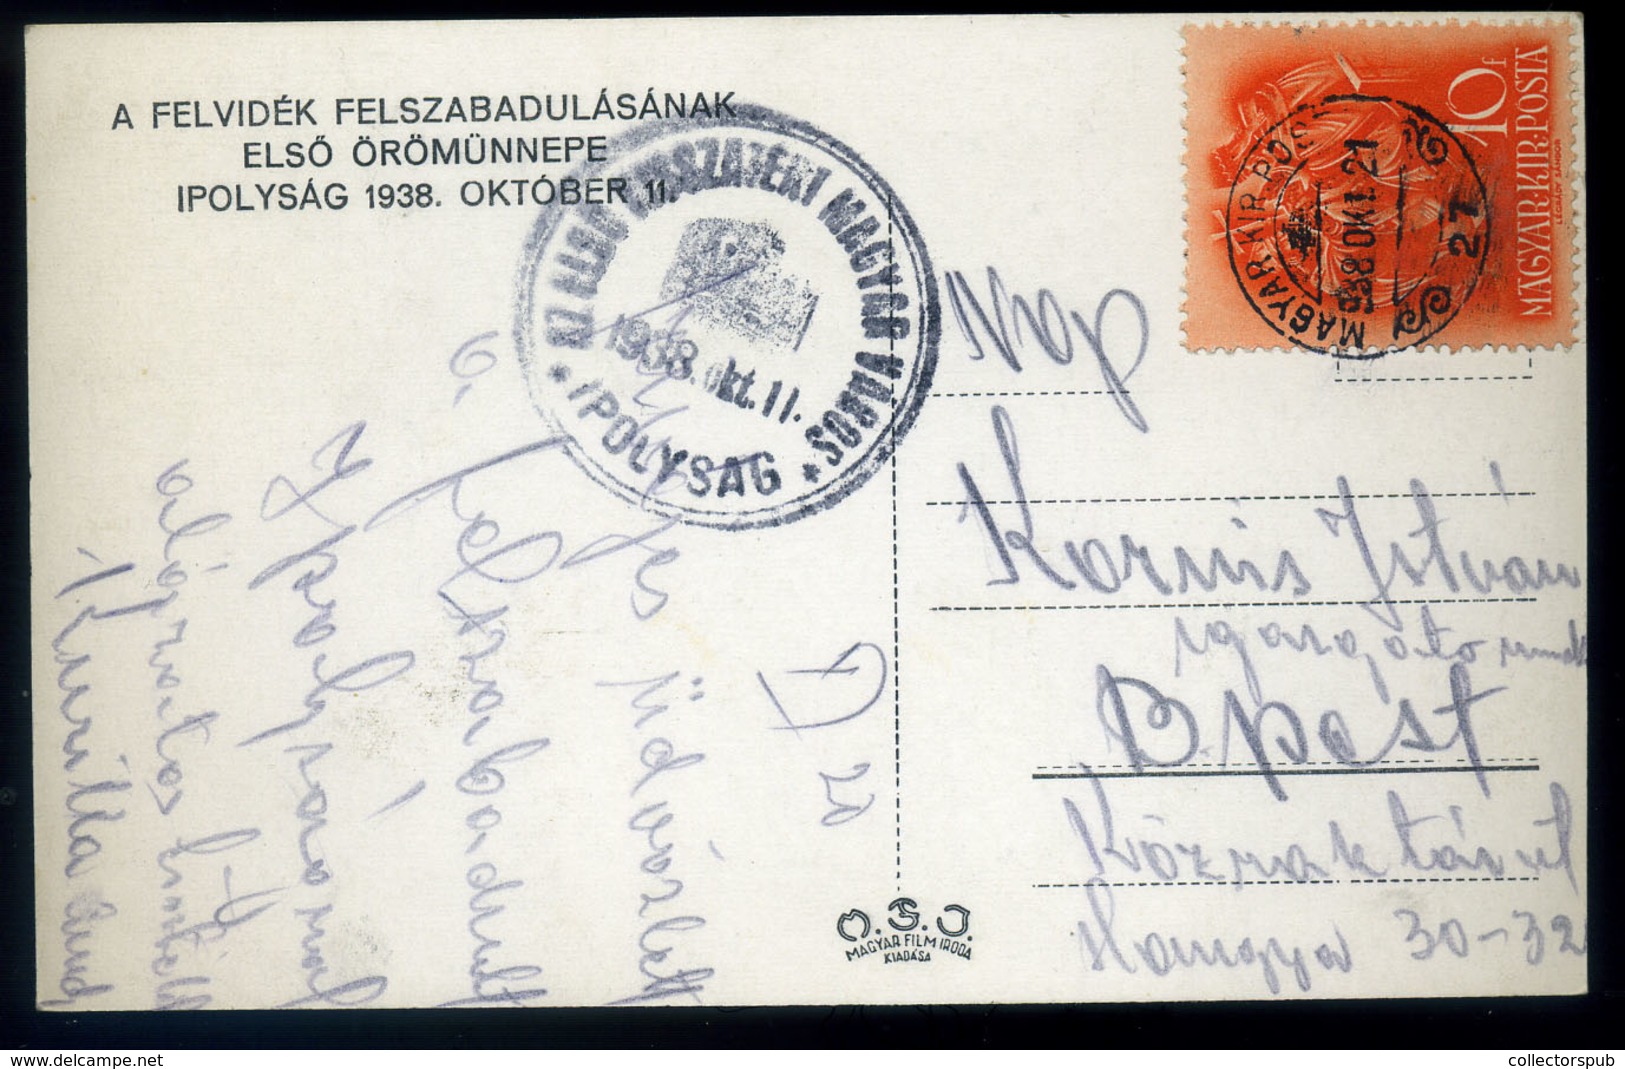 96320 IPOLYSÁG 1938. Visszatérés, Fotós Képeslap HUNGARY / SLOVAKIA - Hungary